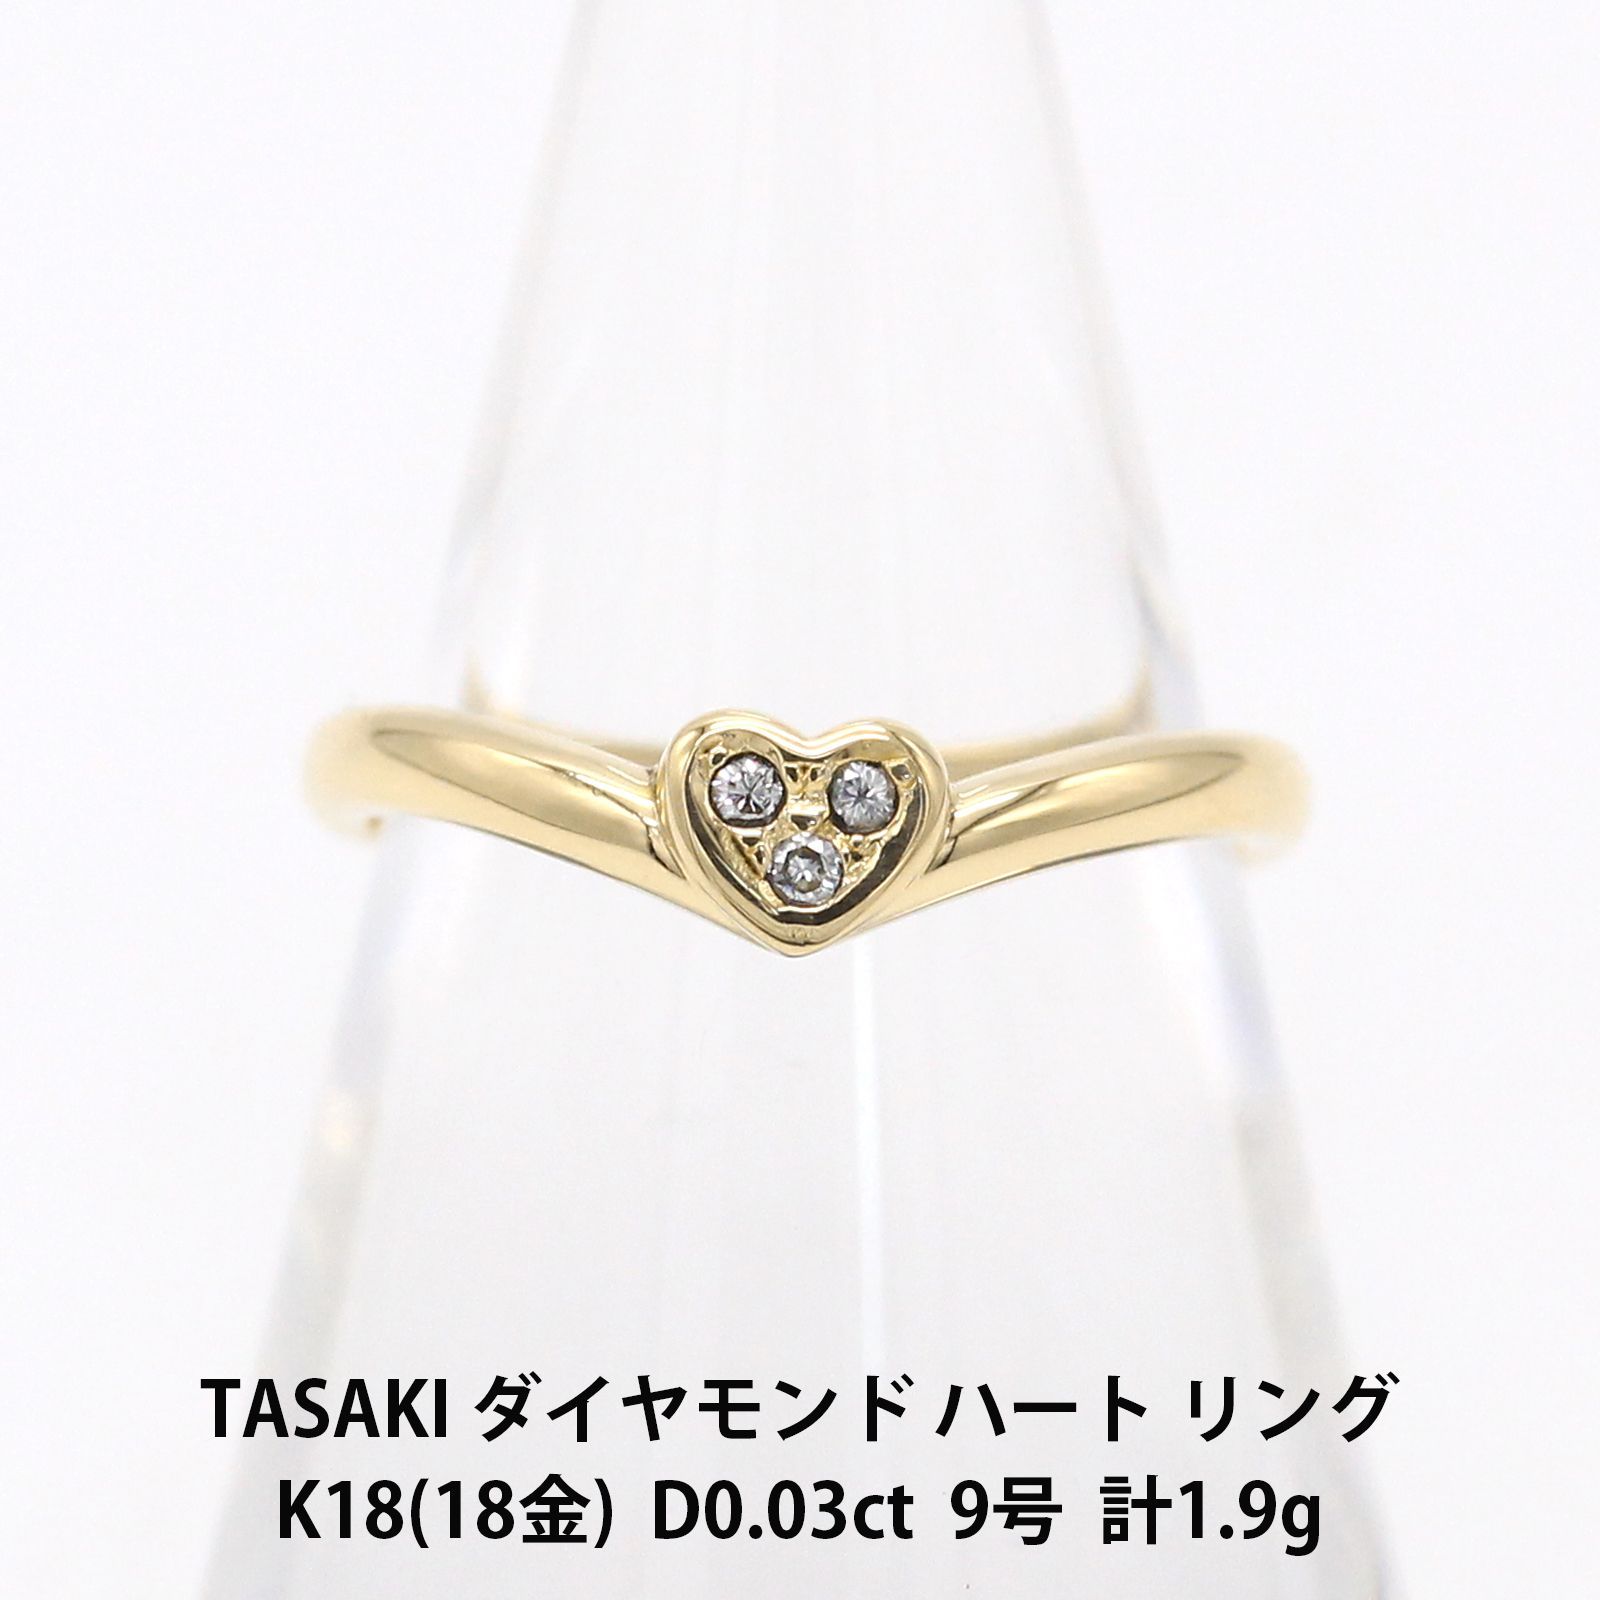 TASAKI タサキ 3ポイント ダイヤモンド 750 ハート リング 9号 指輪 アクセサリー ジュエリー A03829